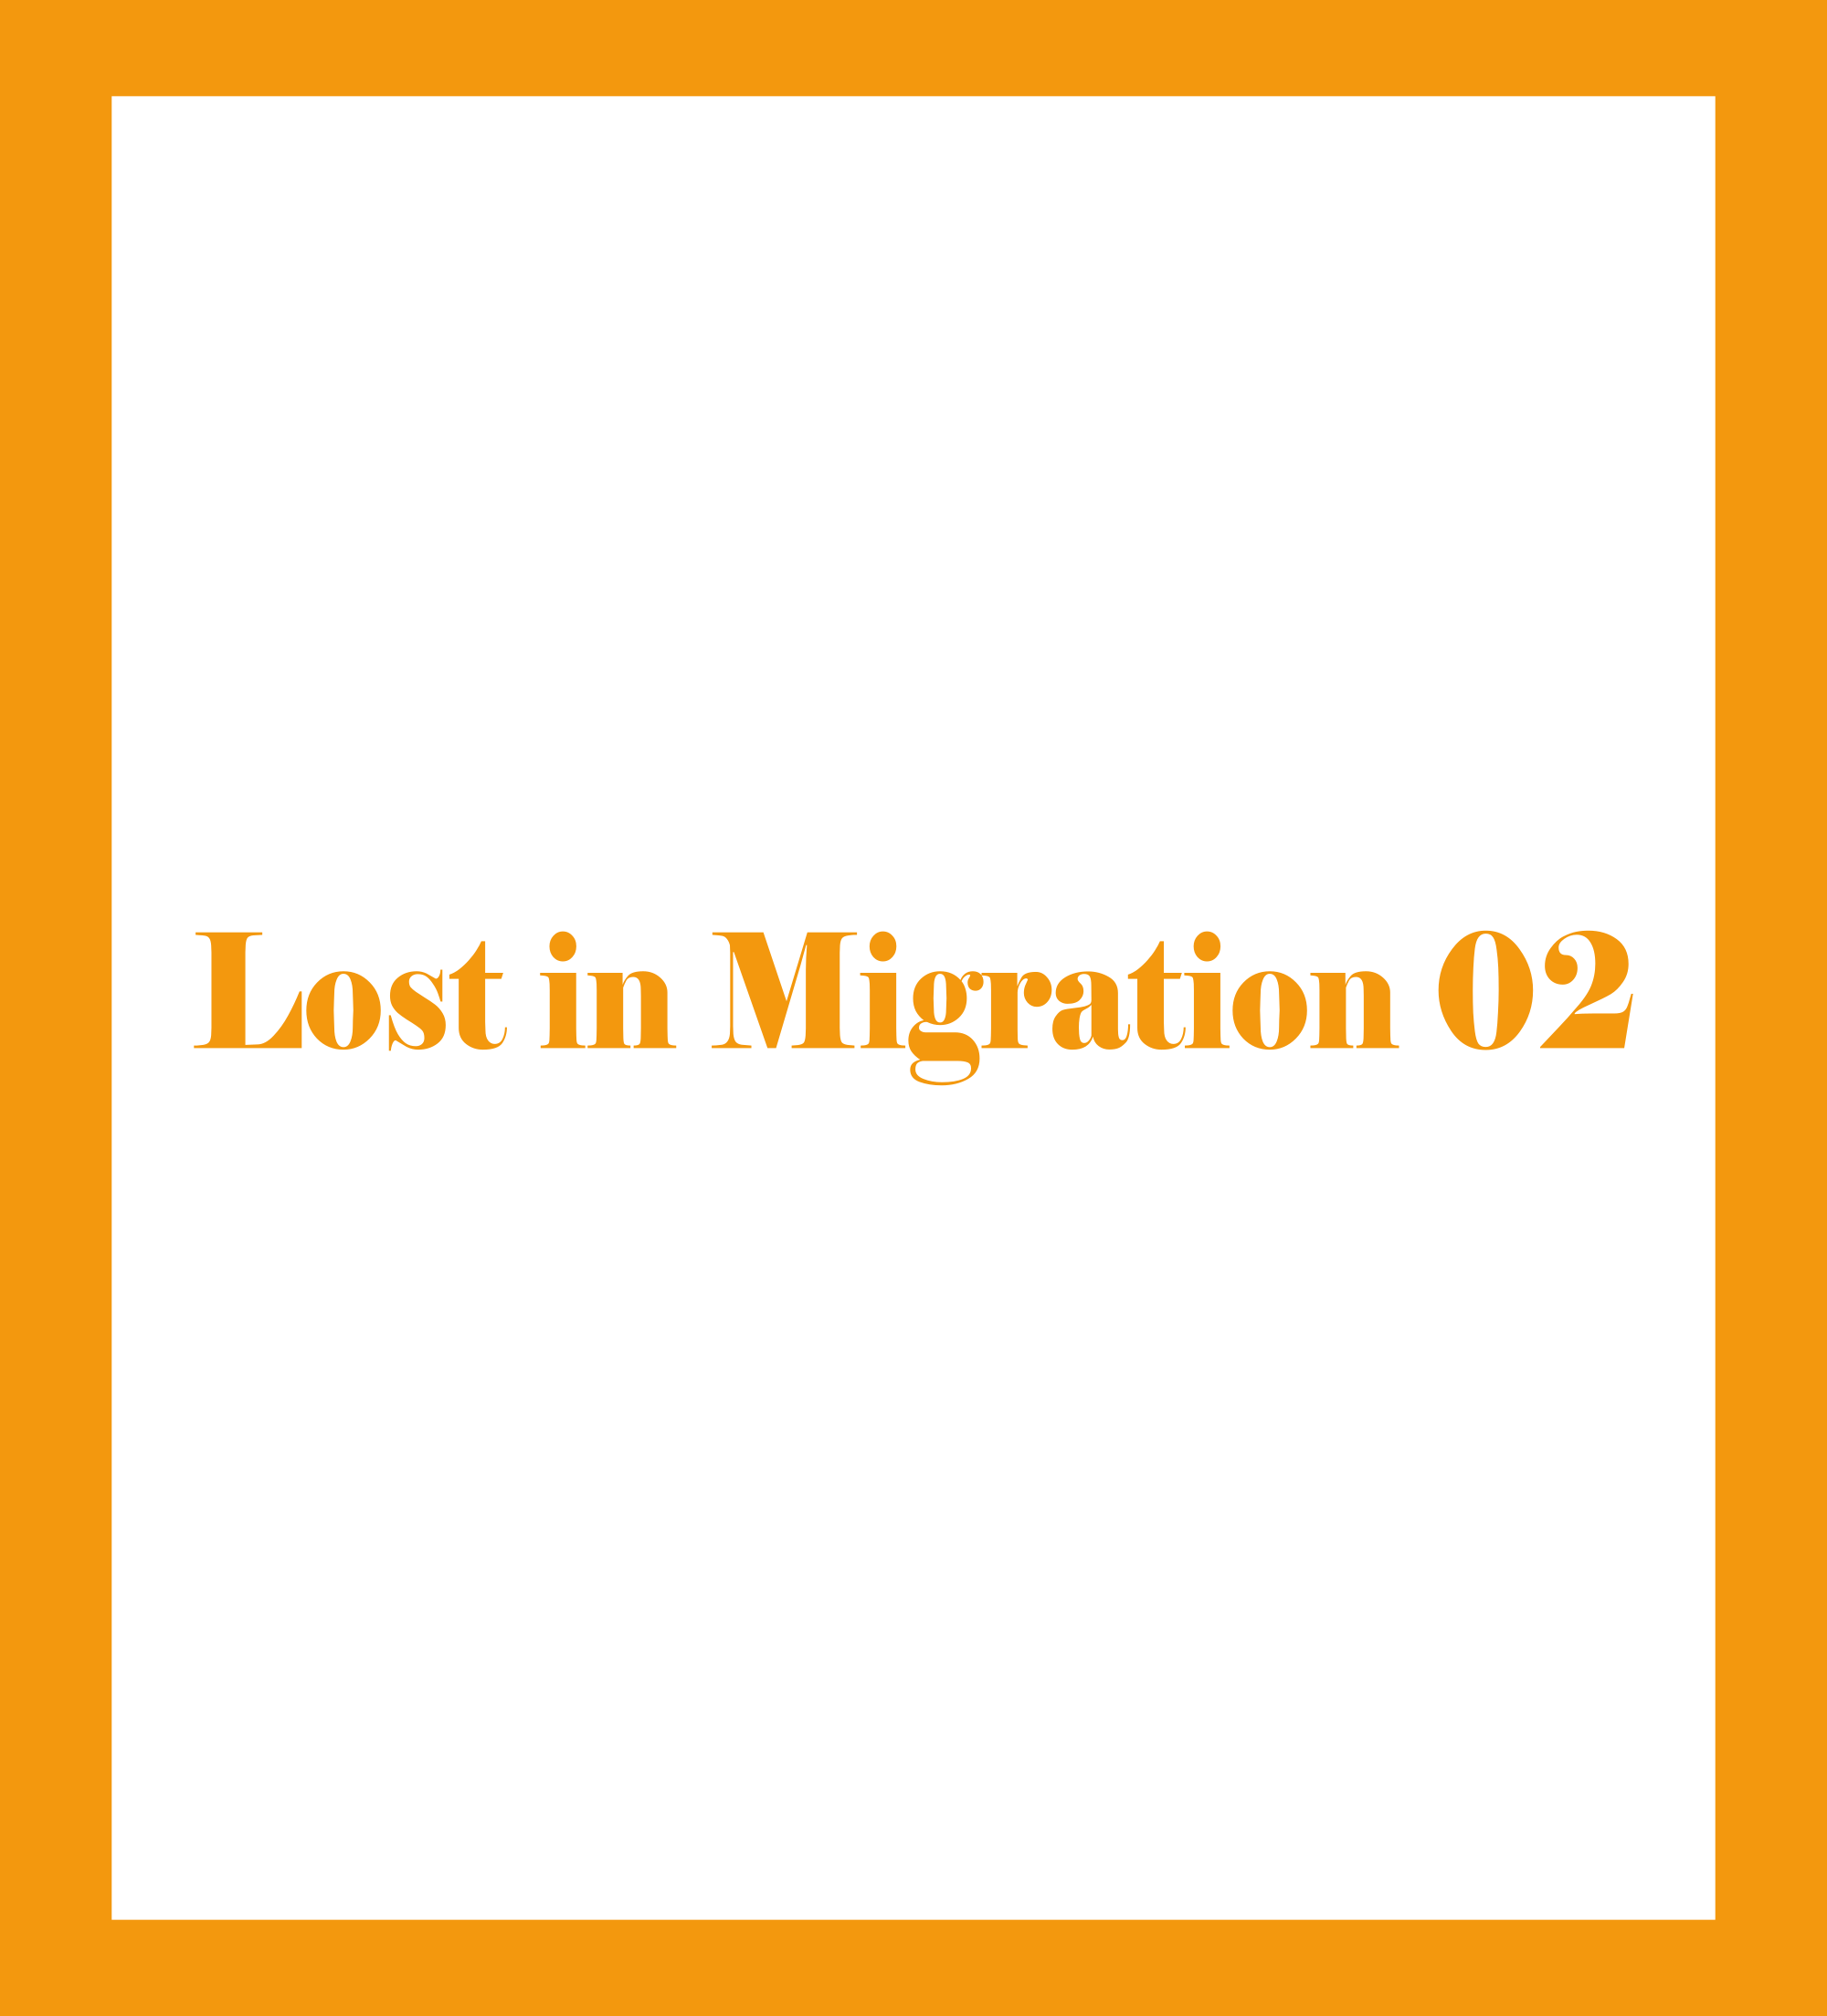 Perdido en la inmigracion 02